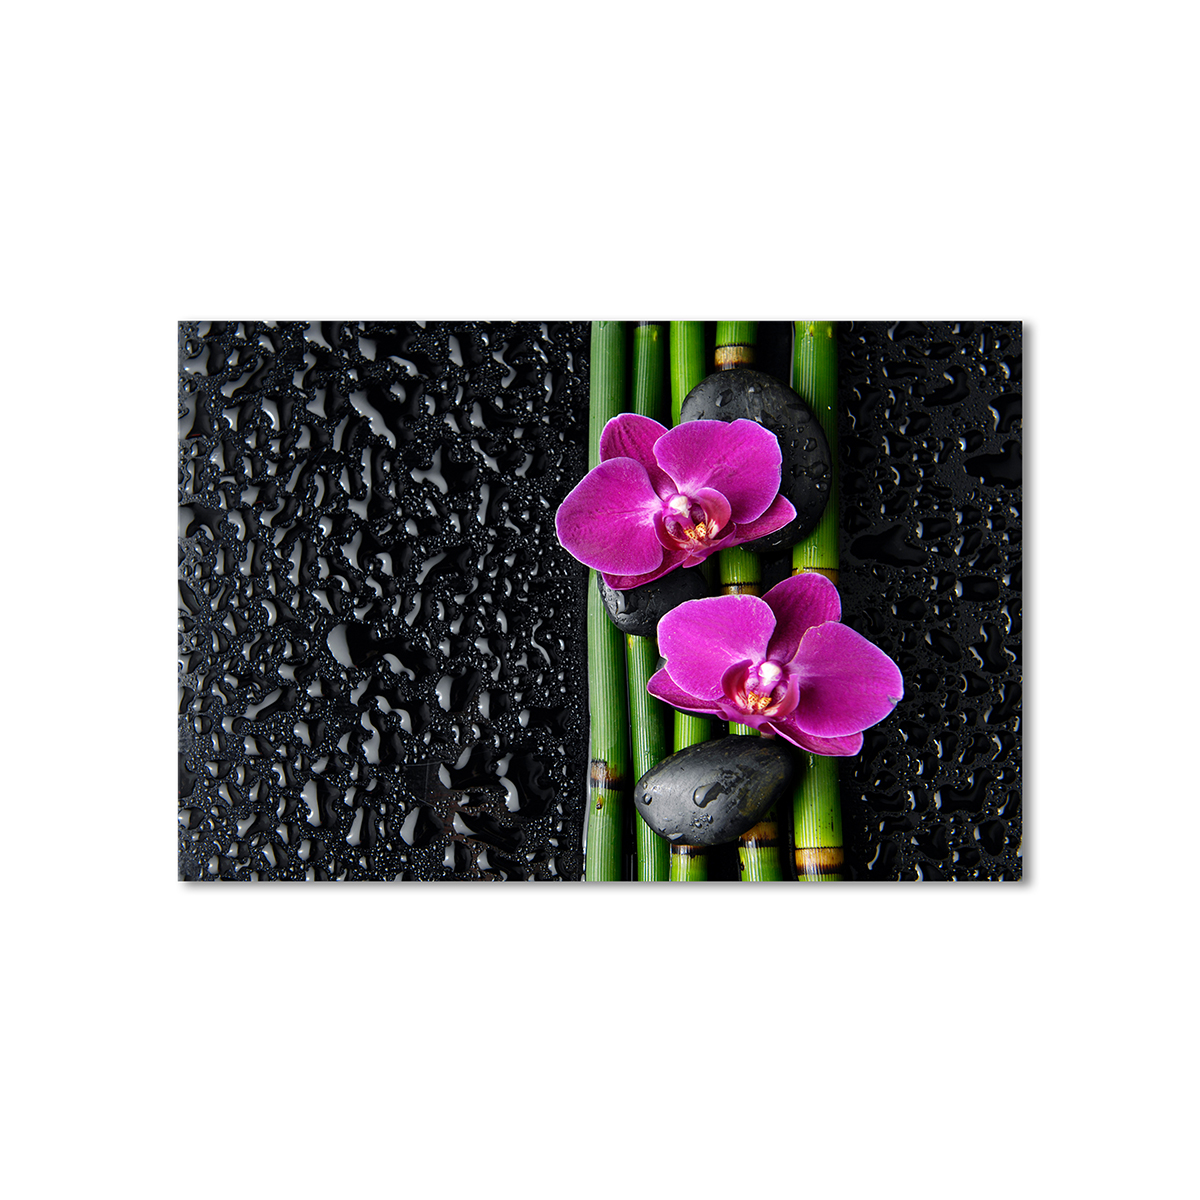 

Модульная картина Artel «Восточная композиция, фиолетовые орхидеи» 1 модуль 60x90 см